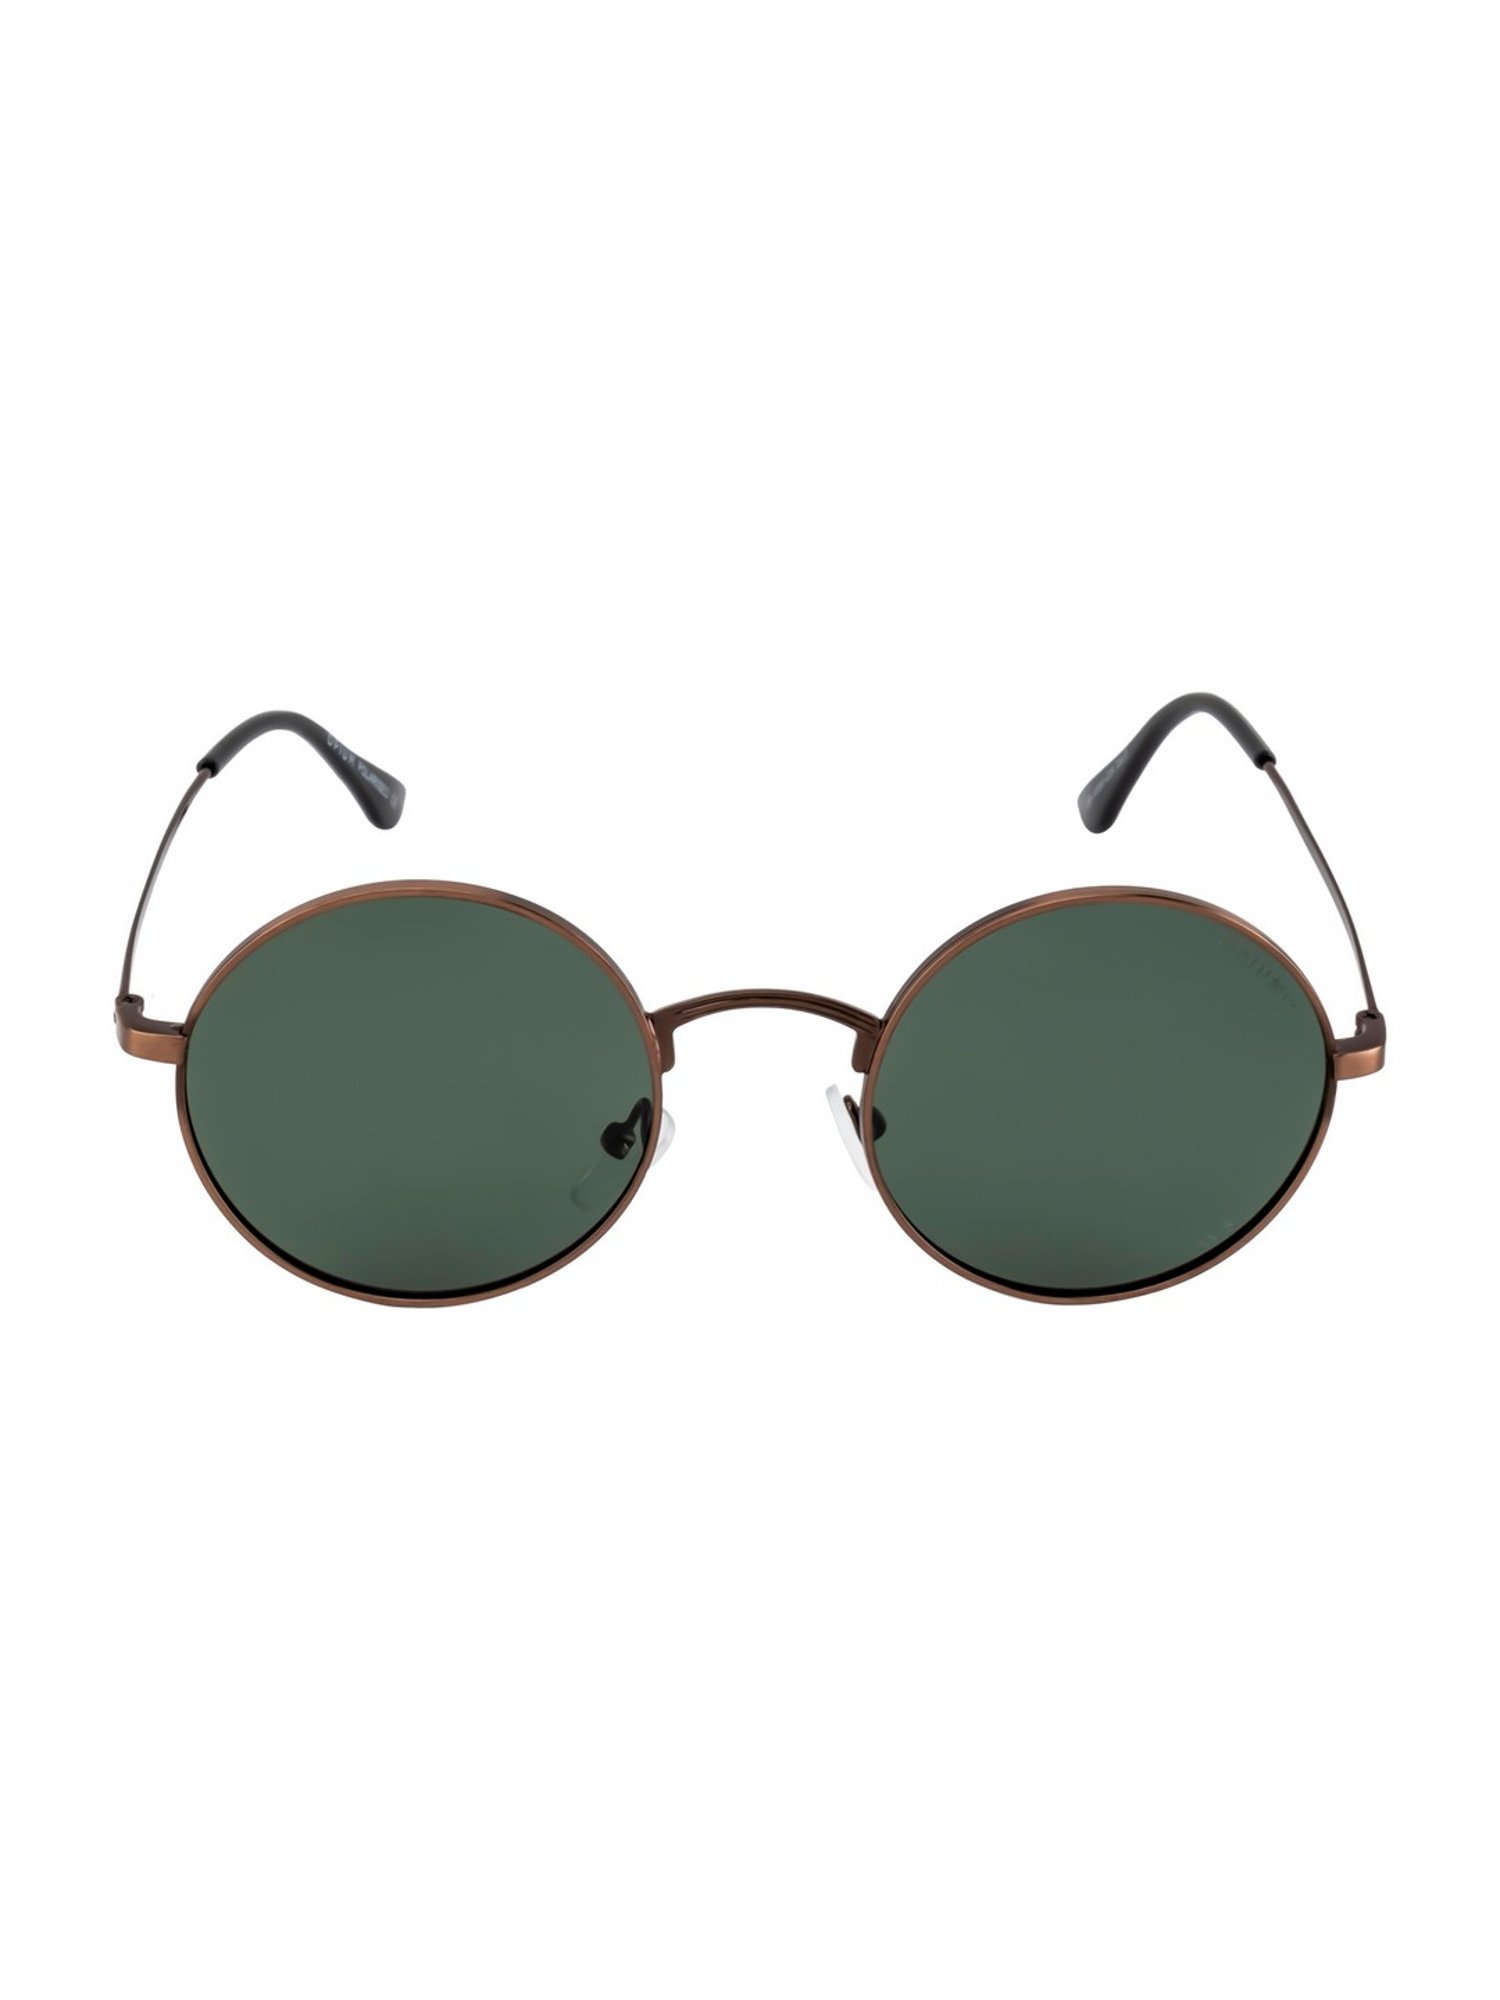 Round sunglasses - Transparent/Green - Men | H&M IN